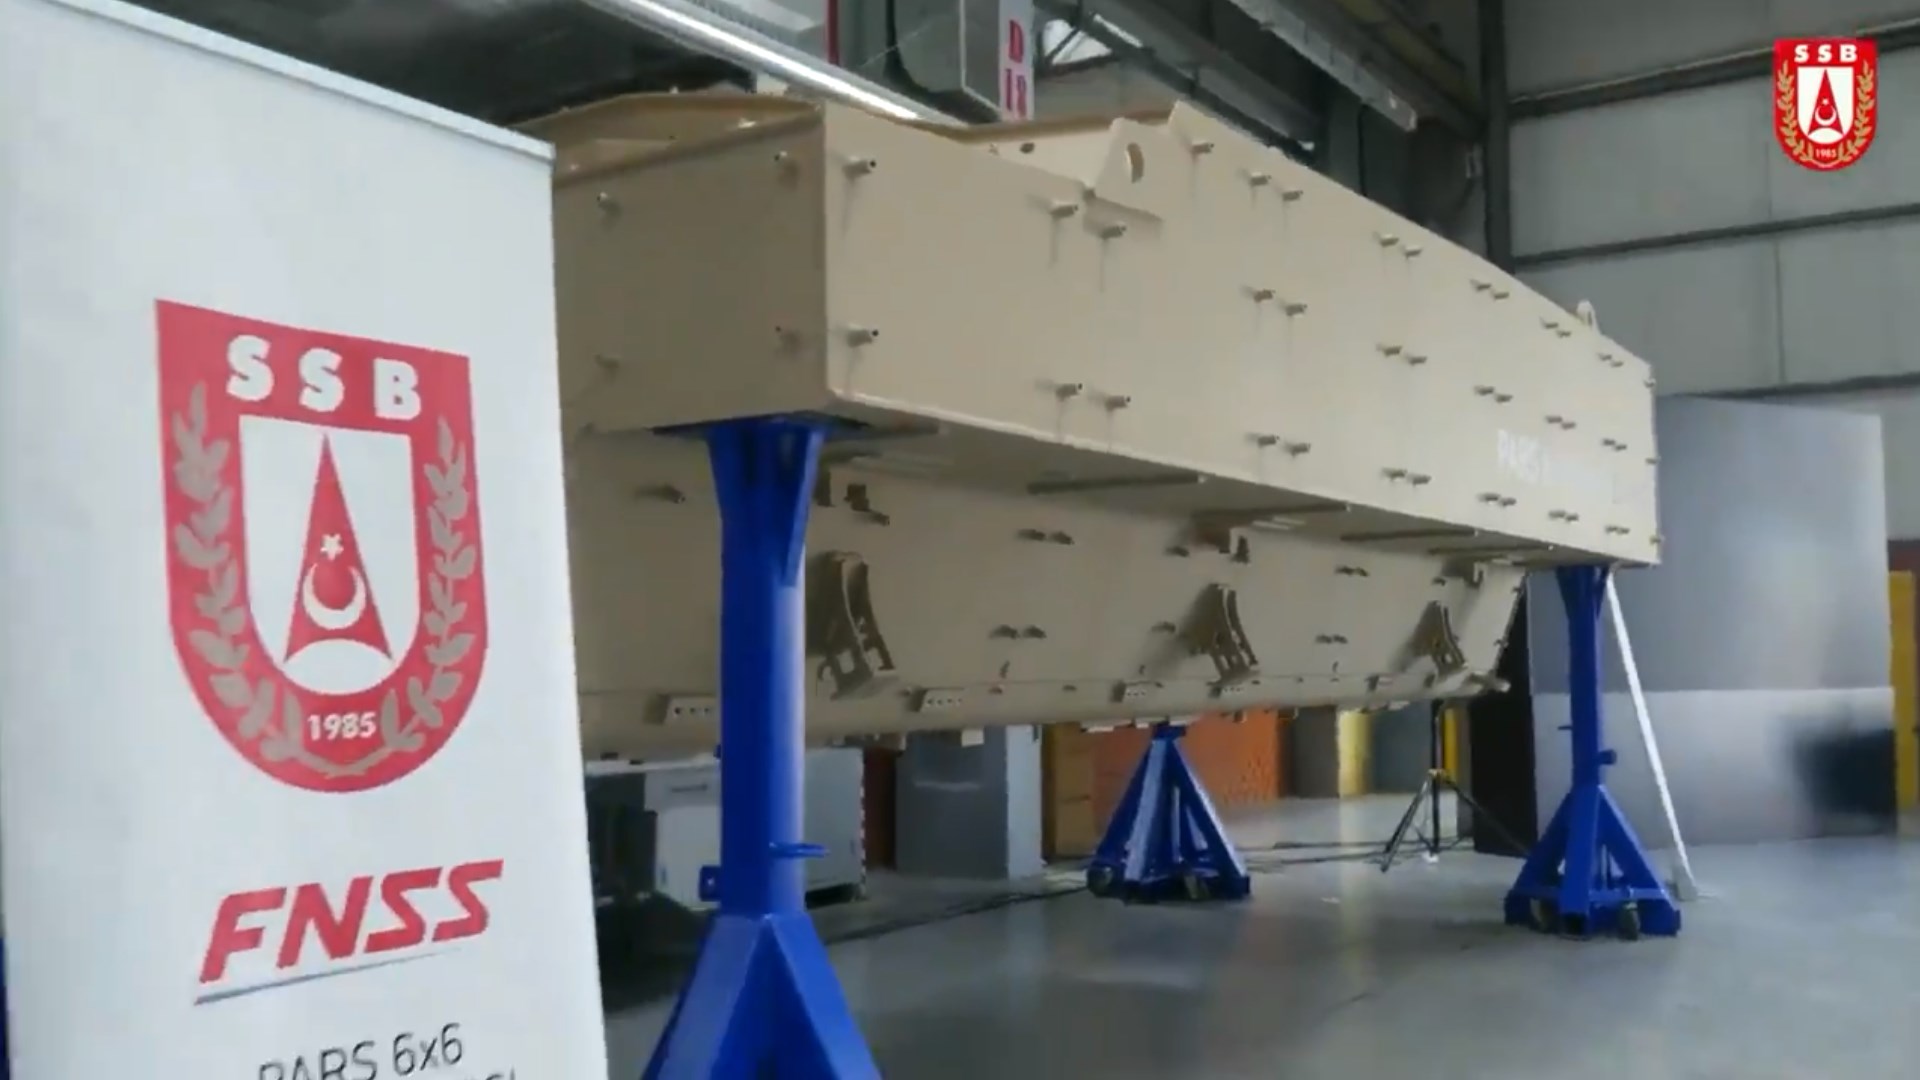 FNSS’in geliştirdiği Pars 6x6 Mayına Karşı Korumalı Araç'ın ilk montajı yapıldı